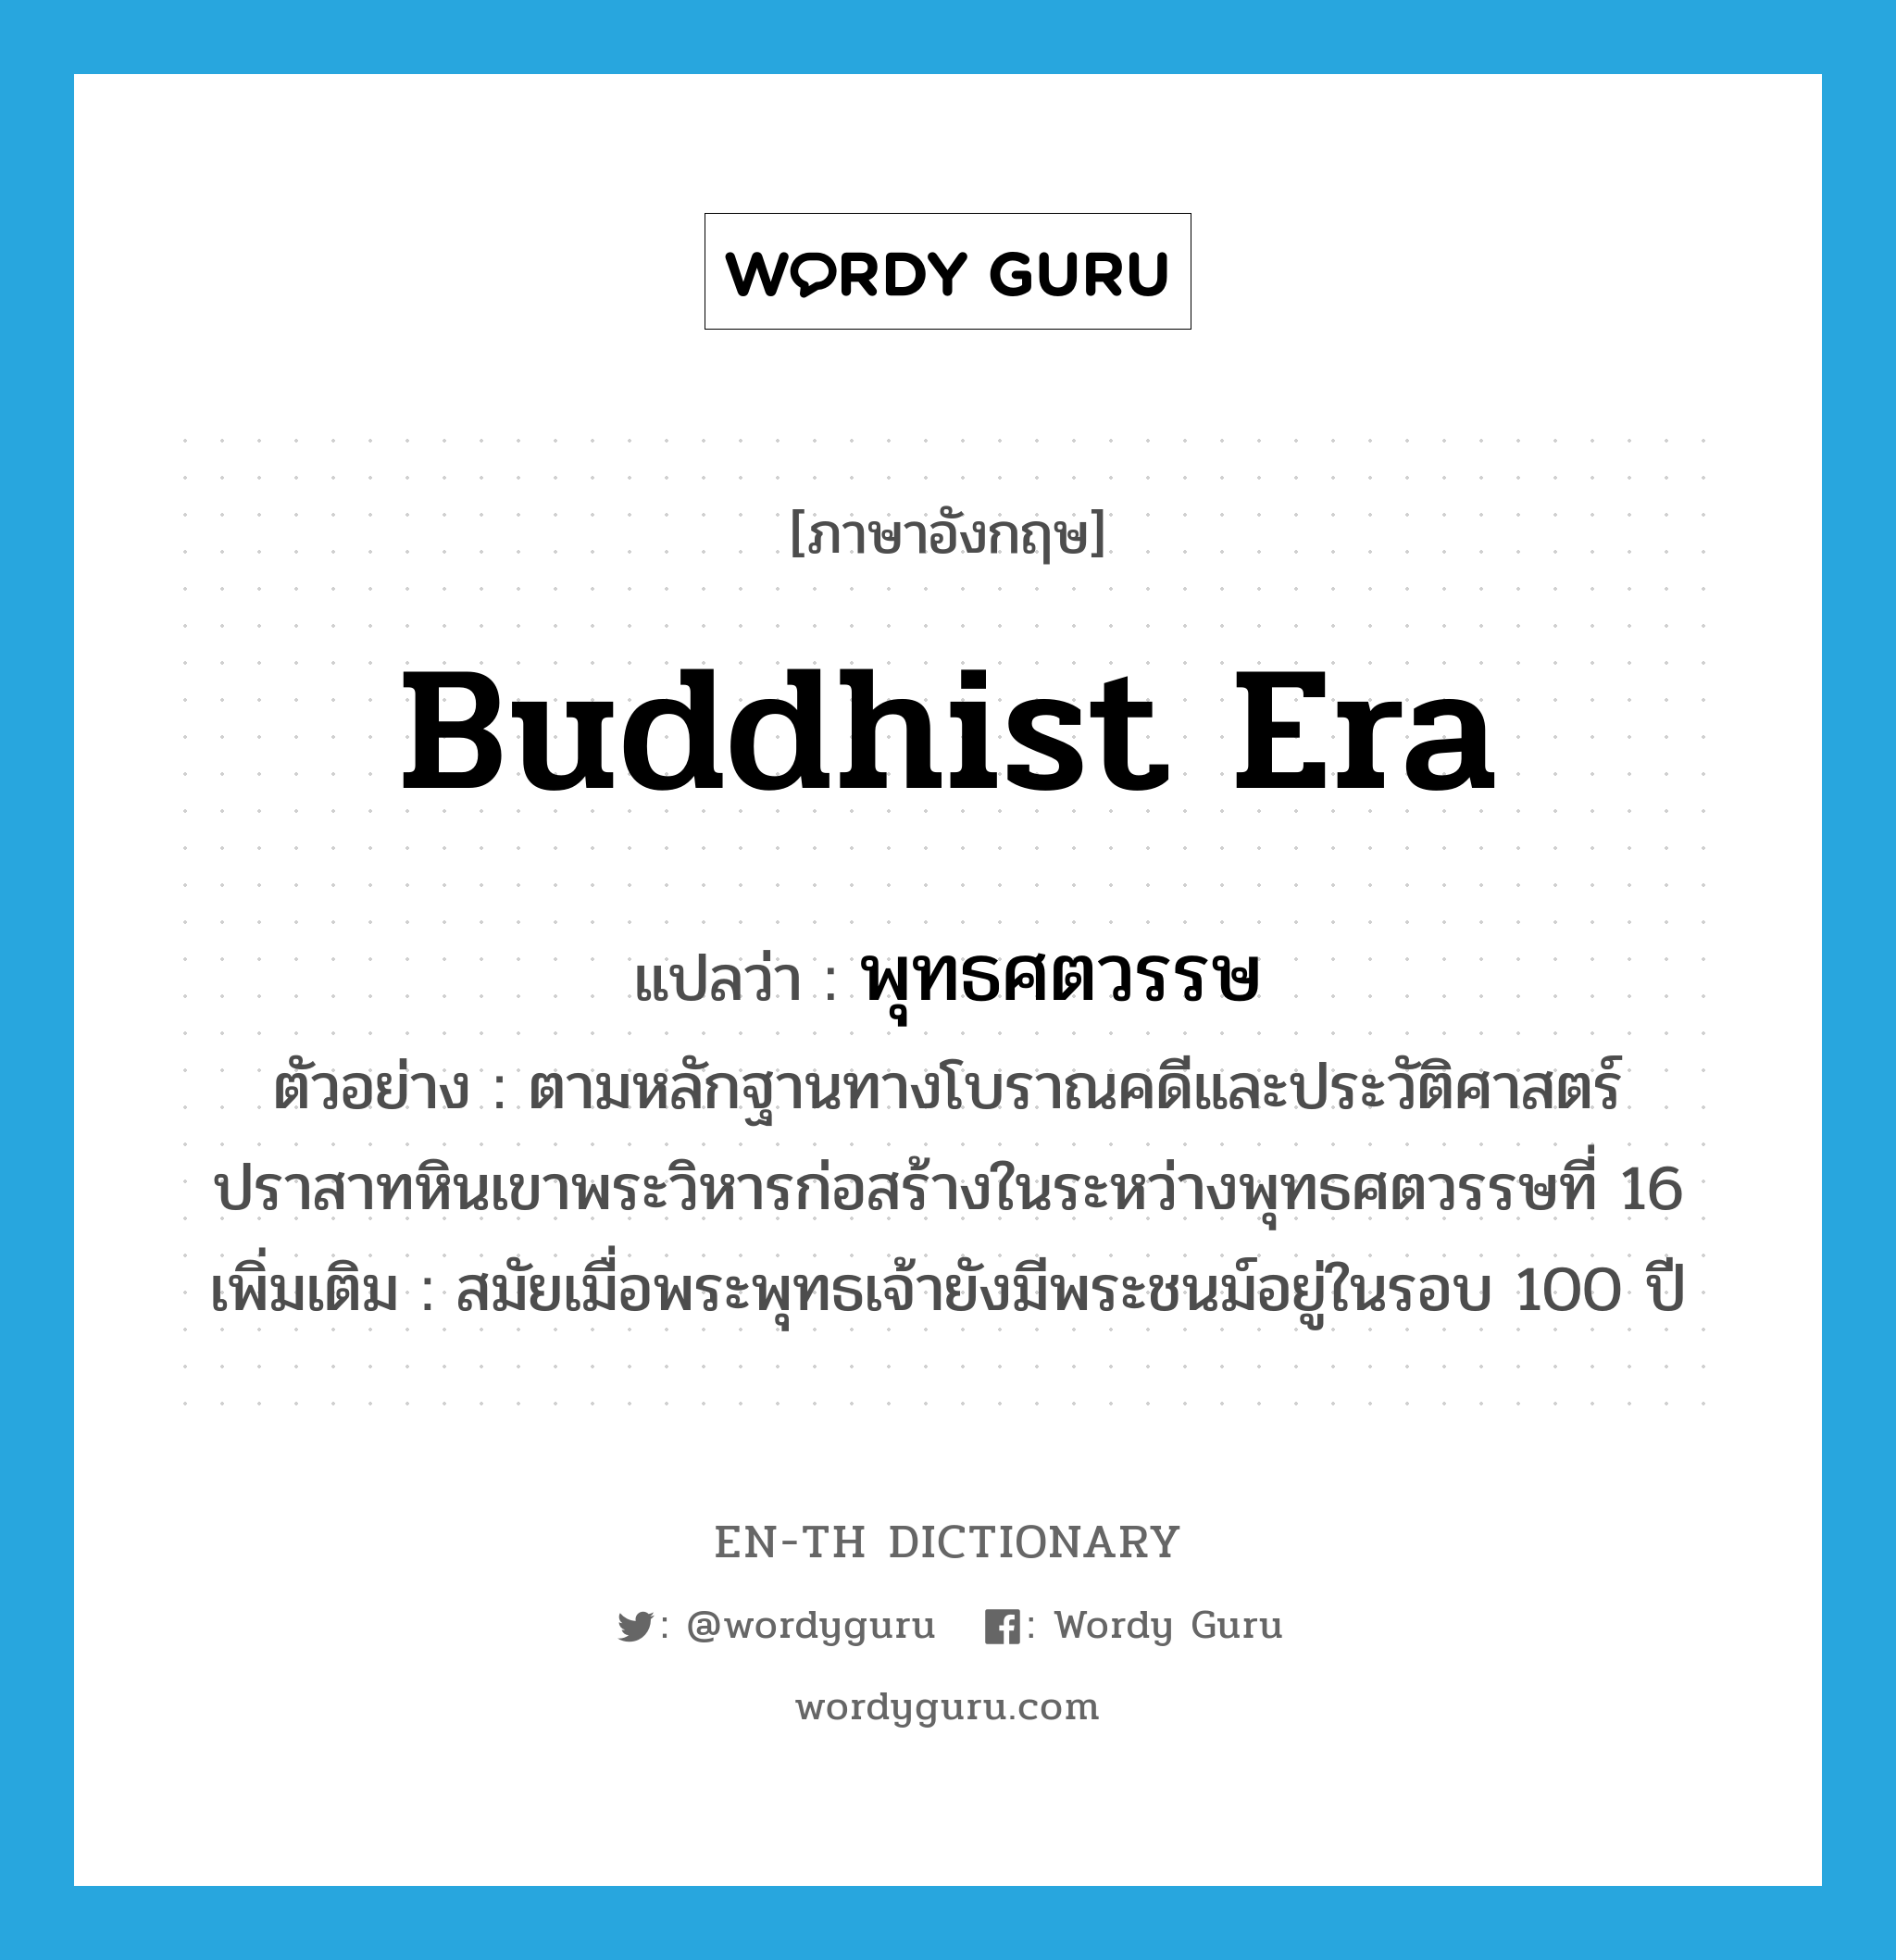 Buddhist era แปลว่า?, คำศัพท์ภาษาอังกฤษ Buddhist era แปลว่า พุทธศตวรรษ ประเภท N ตัวอย่าง ตามหลักฐานทางโบราณคดีและประวัติศาสตร์ ปราสาทหินเขาพระวิหารก่อสร้างในระหว่างพุทธศตวรรษที่ 16 เพิ่มเติม สมัยเมื่อพระพุทธเจ้ายังมีพระชนม์อยู่ในรอบ 100 ปี หมวด N